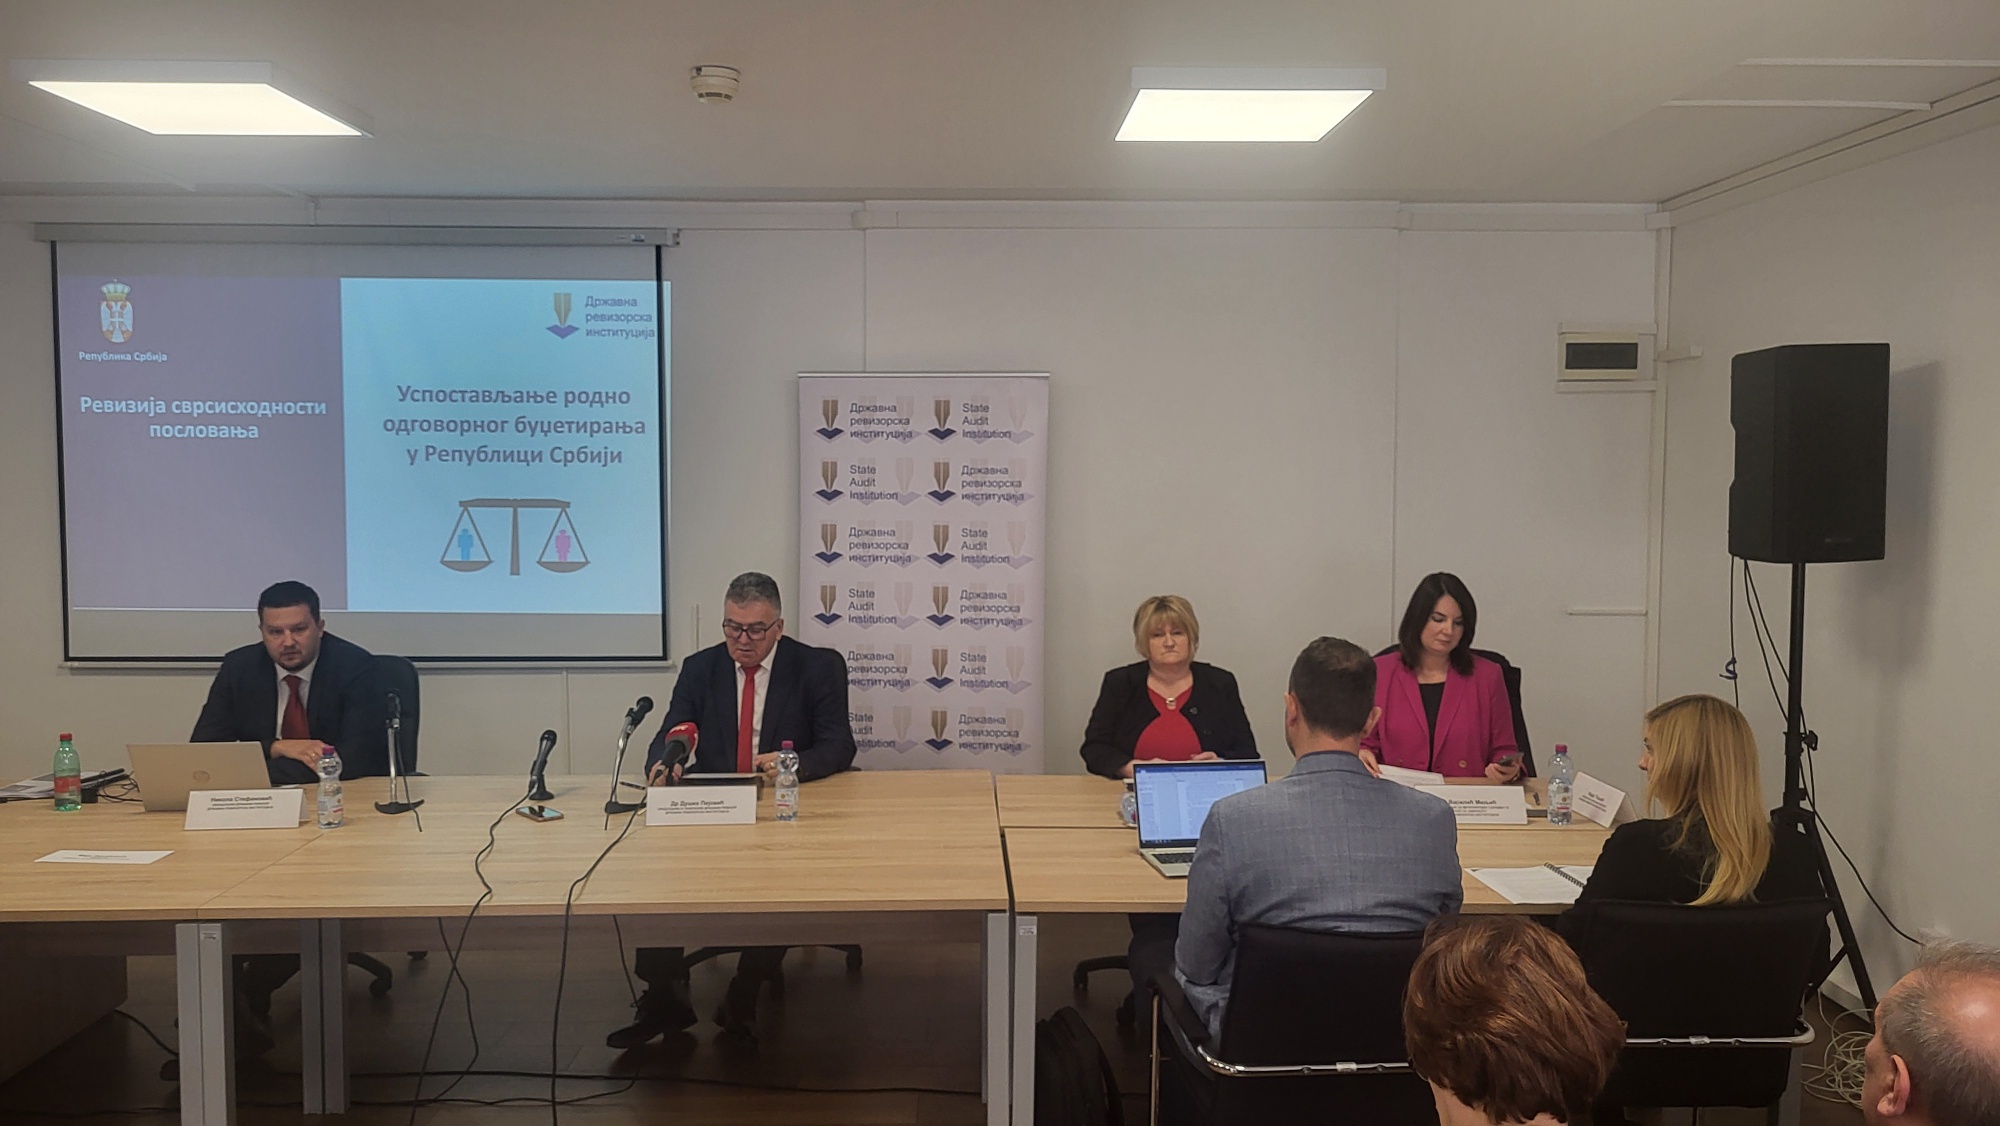 Представљен извештај о ревизији сврсисходности пословања „Успостављање родно одговорног буџетирања у Републици Србији“